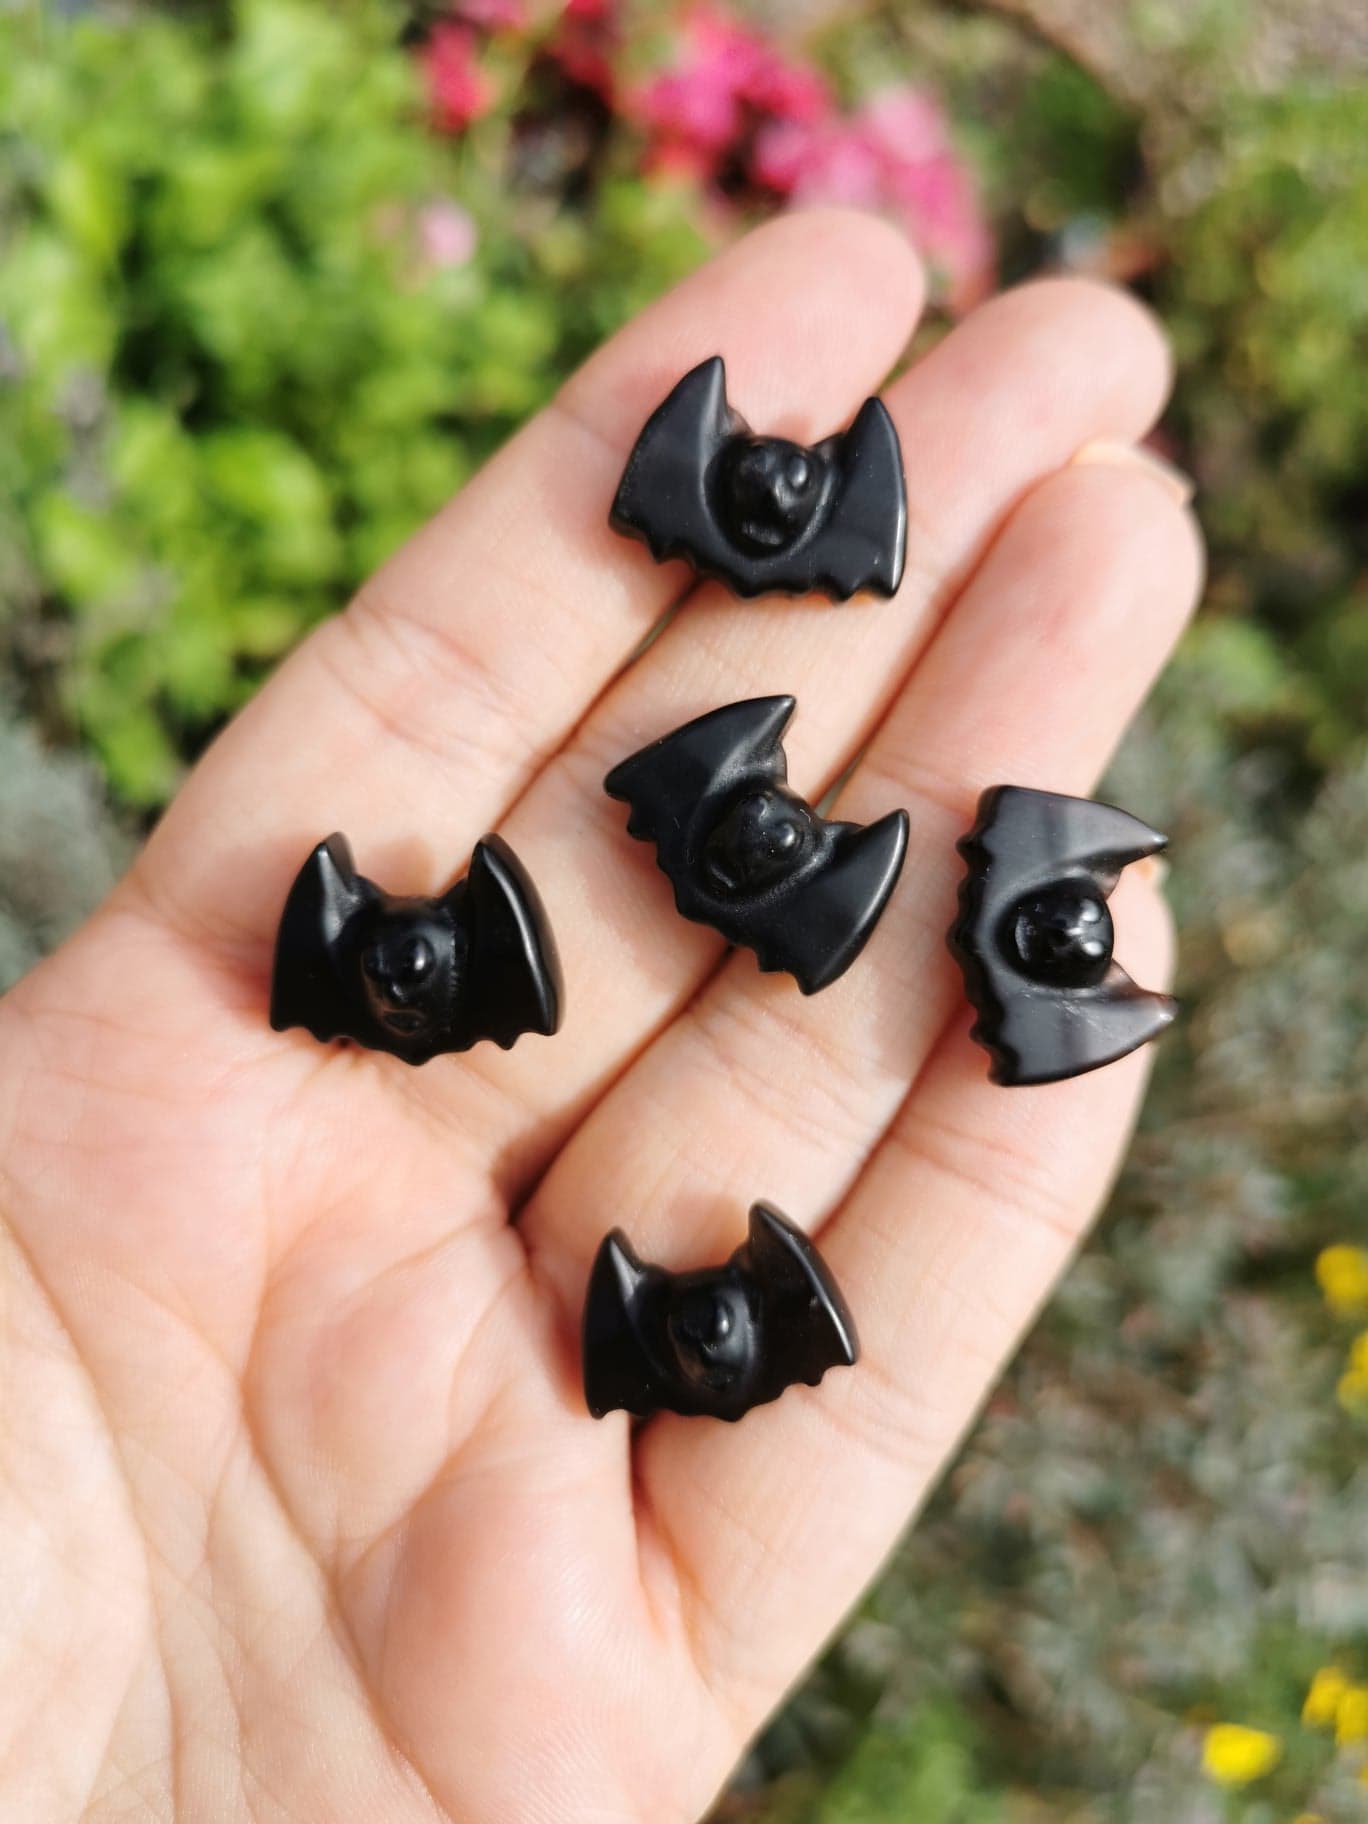 Mini obsidian bats